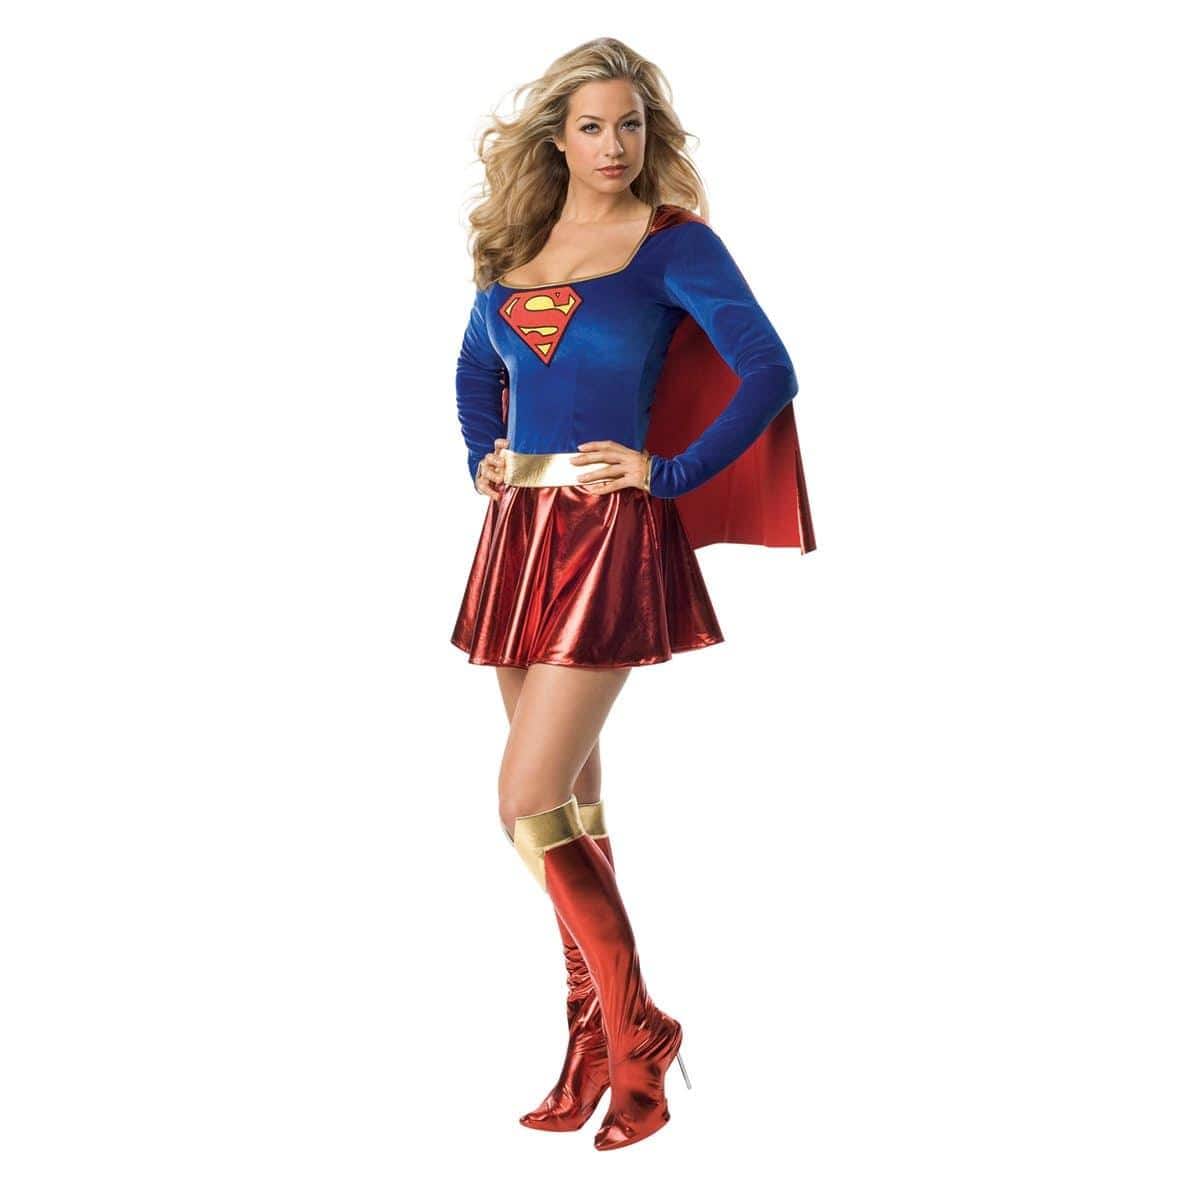 Costume de Supergirl pour adultes